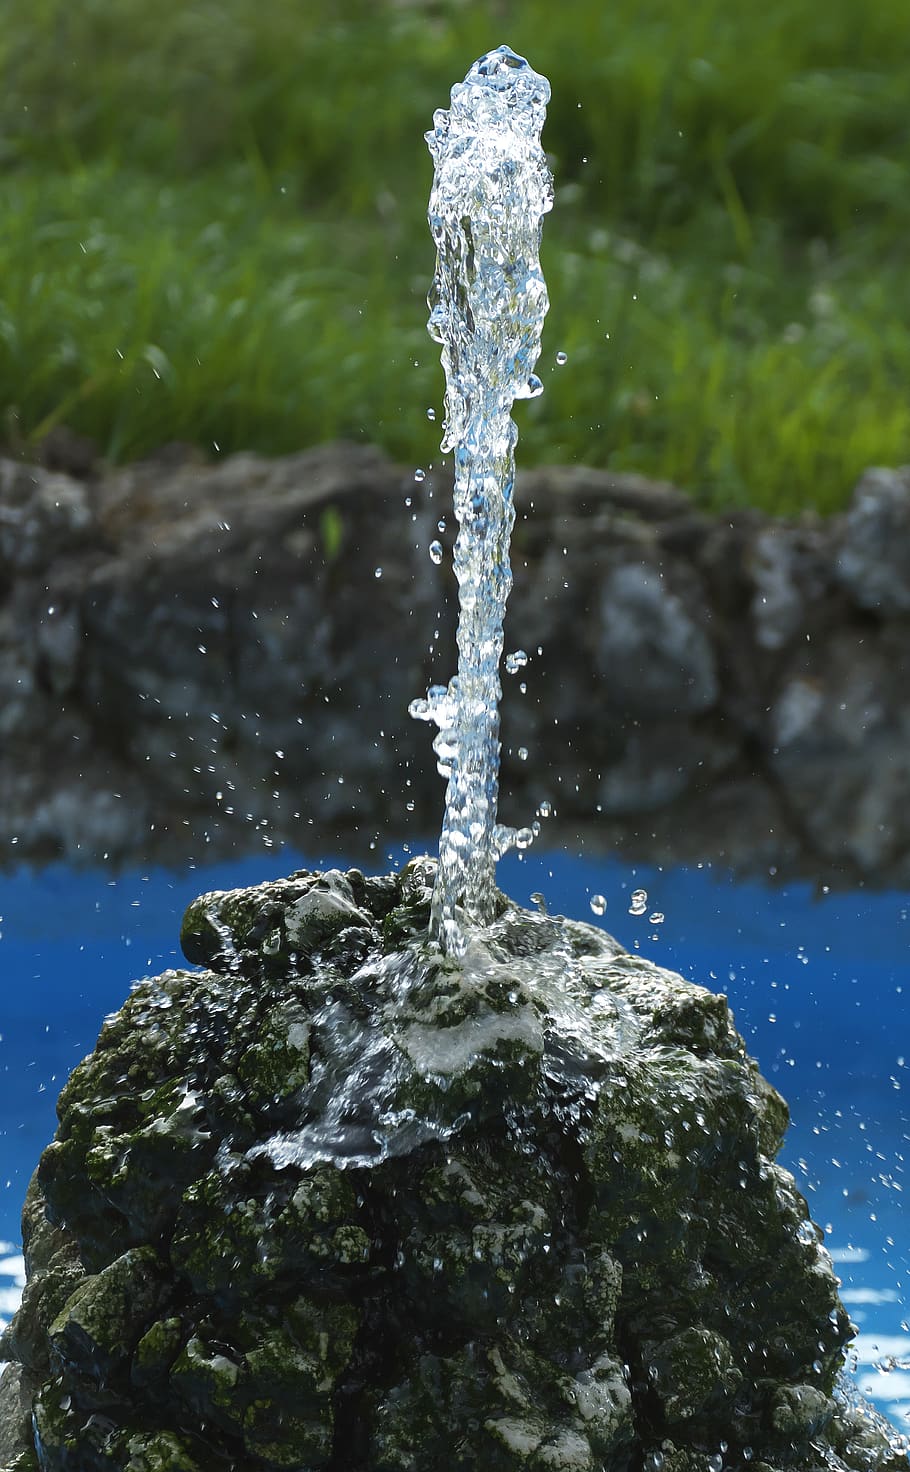 fonte, agua, reflexão, luz de fundo, inicial, gota de água, jato de água, fluxo, característica da água, bacia de água